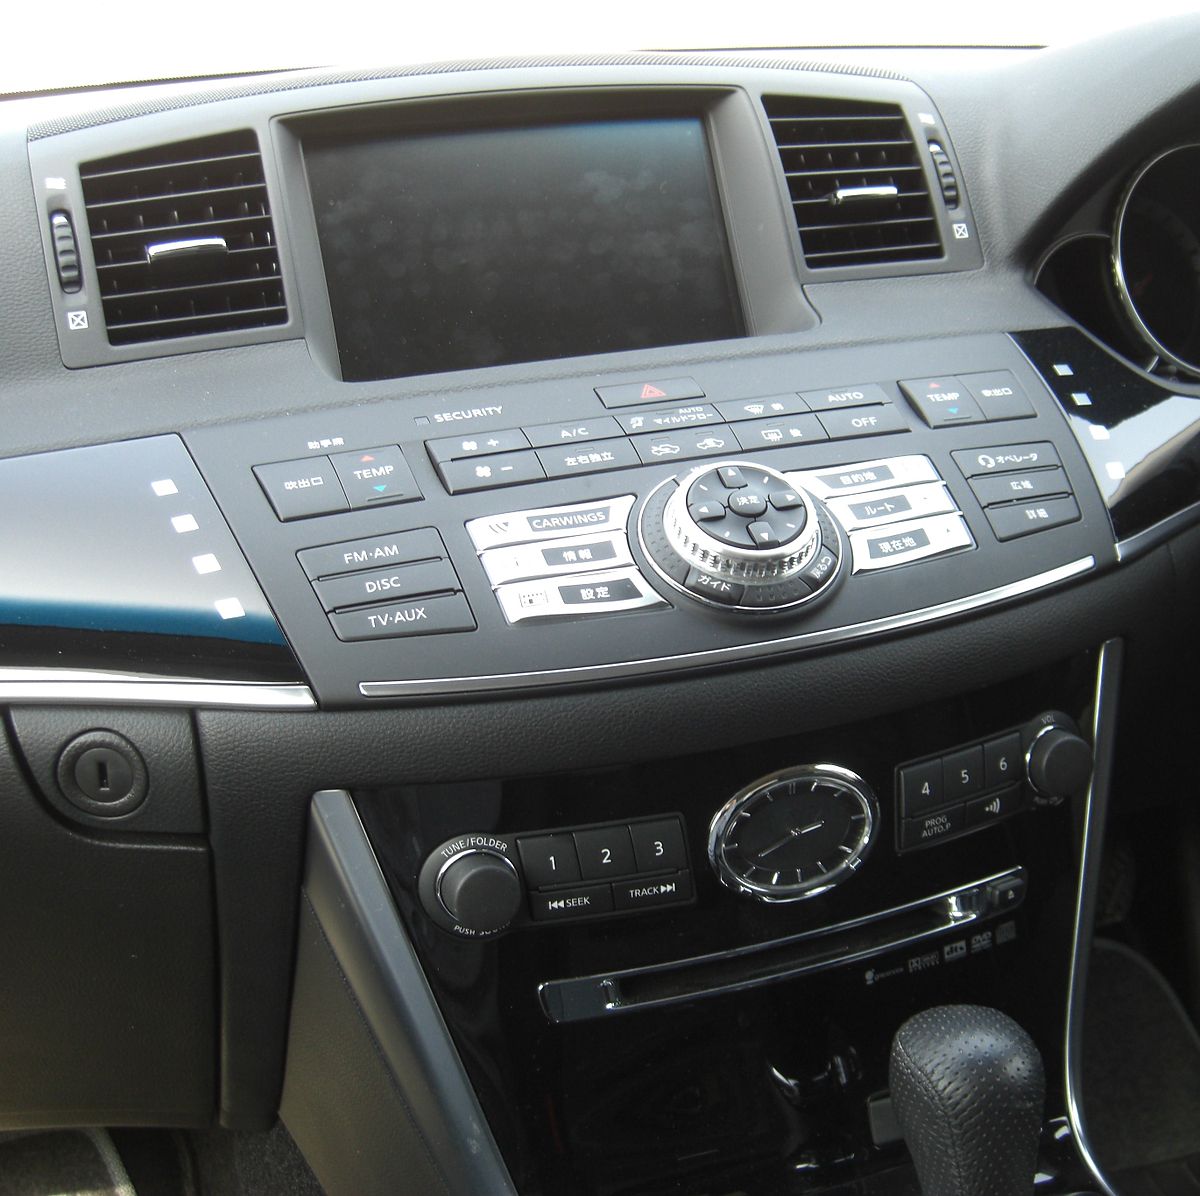 File Nissan Carwings Navigation System For Fuga Jpg